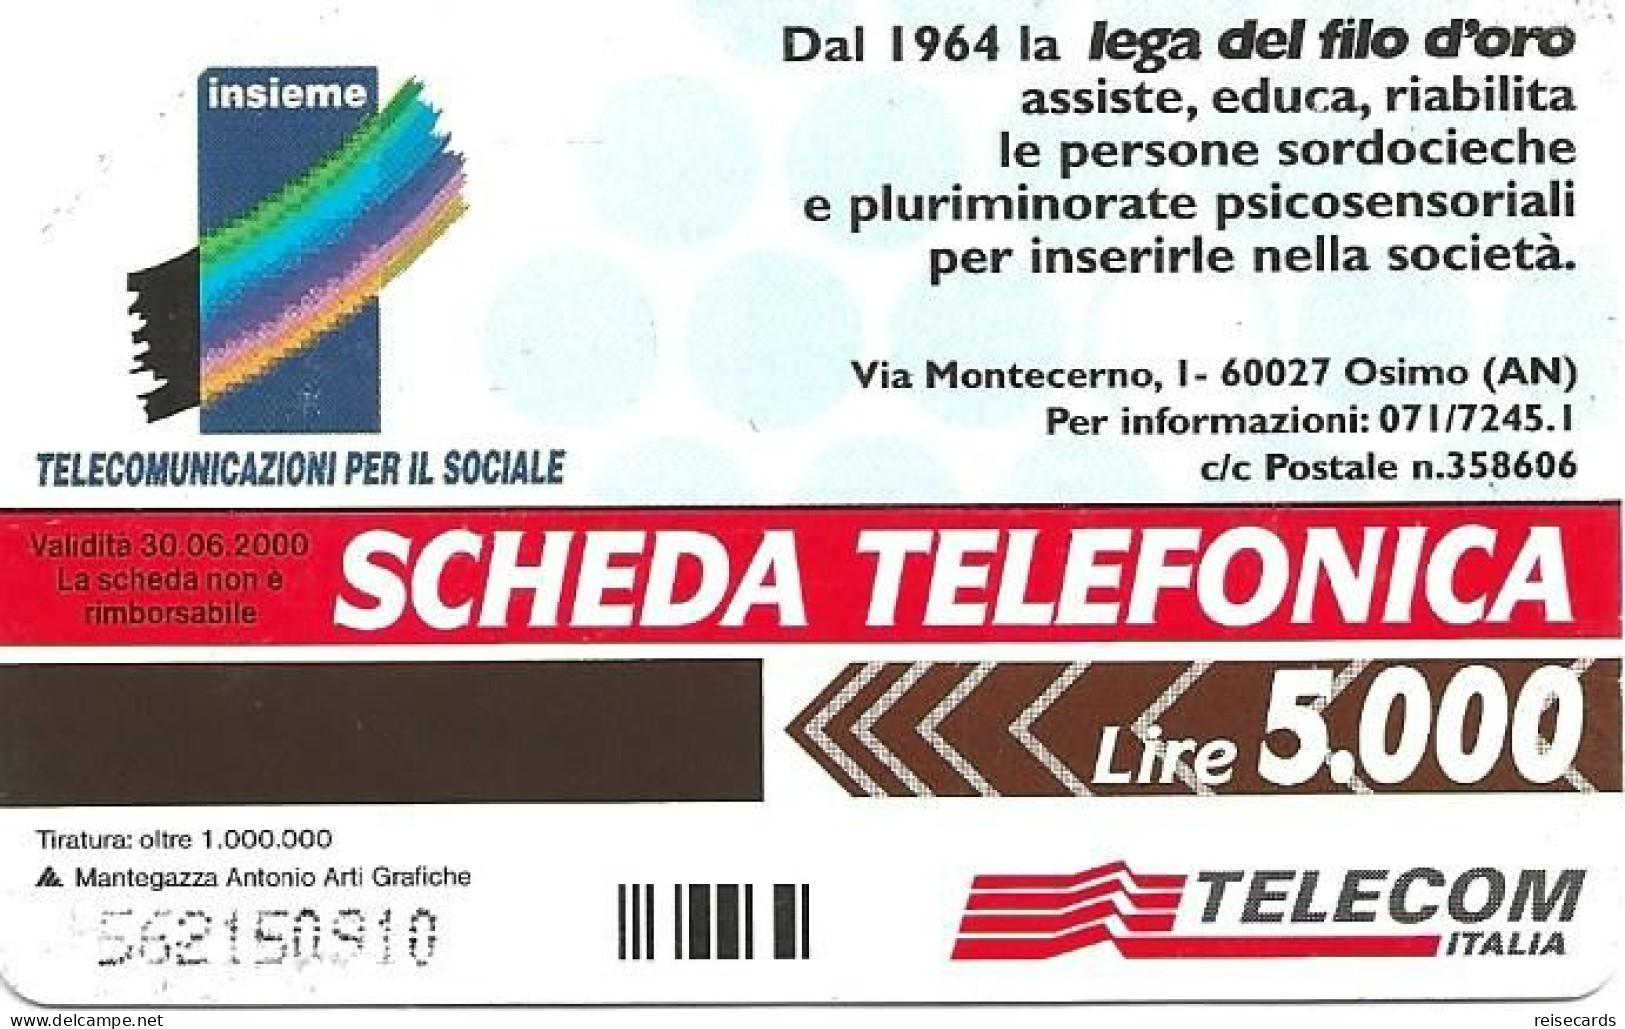 Italy: Telecom Italia - Lega Del Filo D'oro - Öff. Werbe-TK